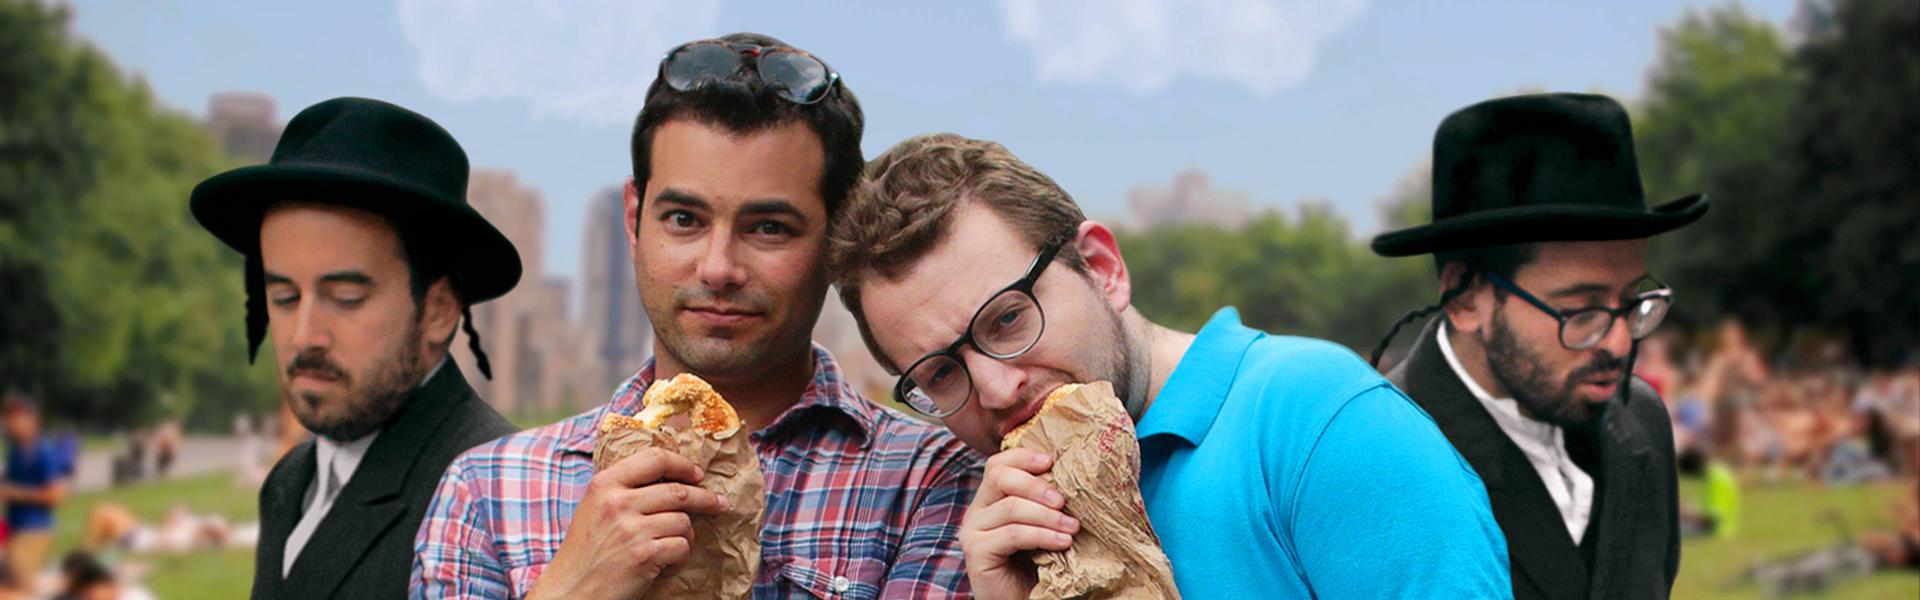 Zwei Männer in kurzärmeligen Shirts stehen im Park, essen Backwaren aus Papiertüten und schauen in die Kamera, neben ihnen stehen zwei Männer jüdisch-orthodox gekleidet.